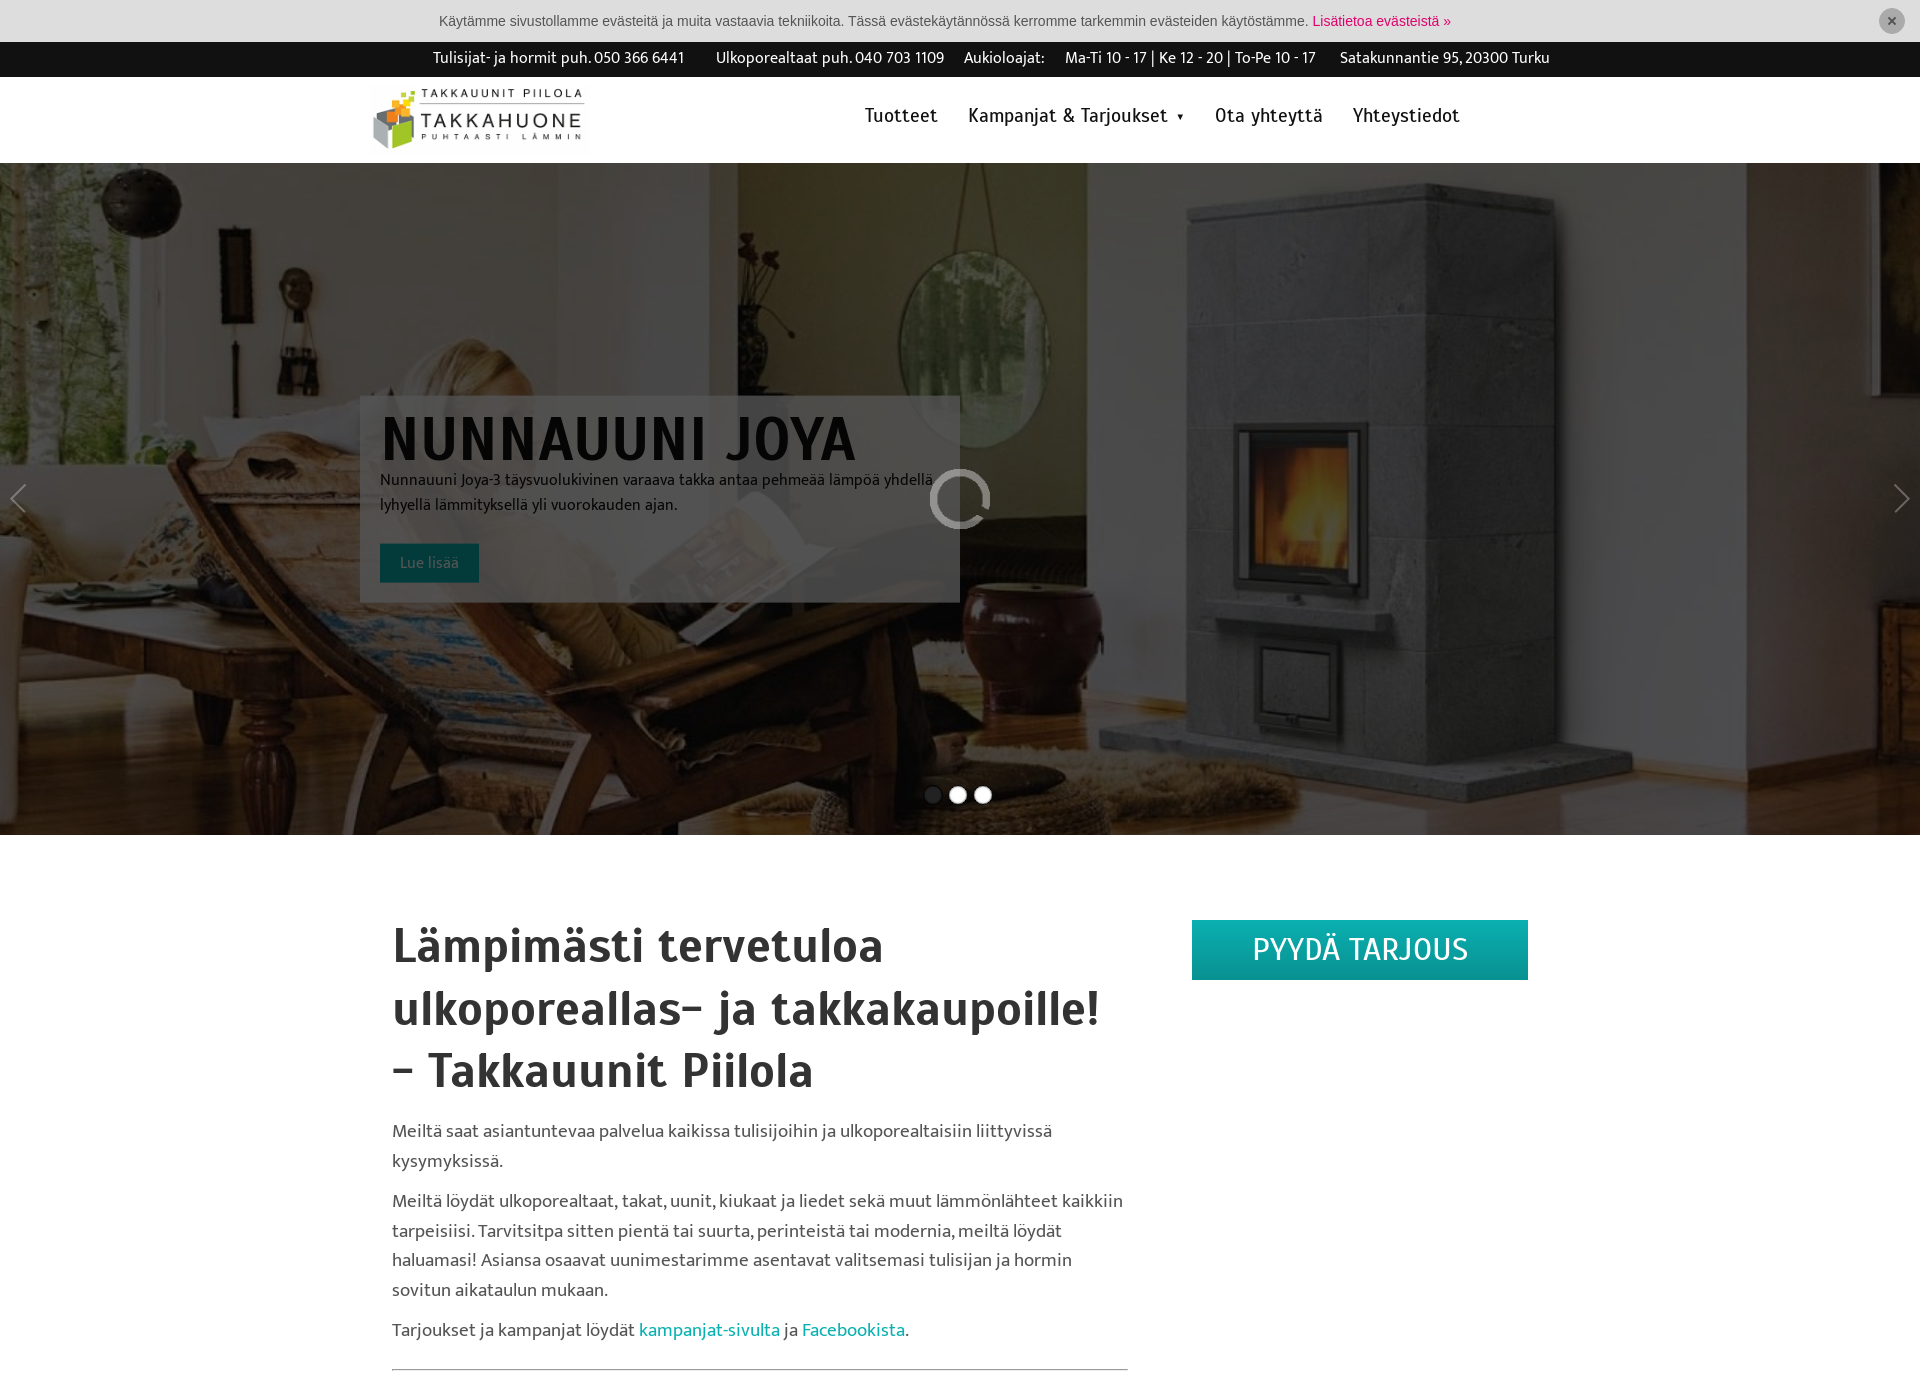 Skärmdump för takkauunit.fi